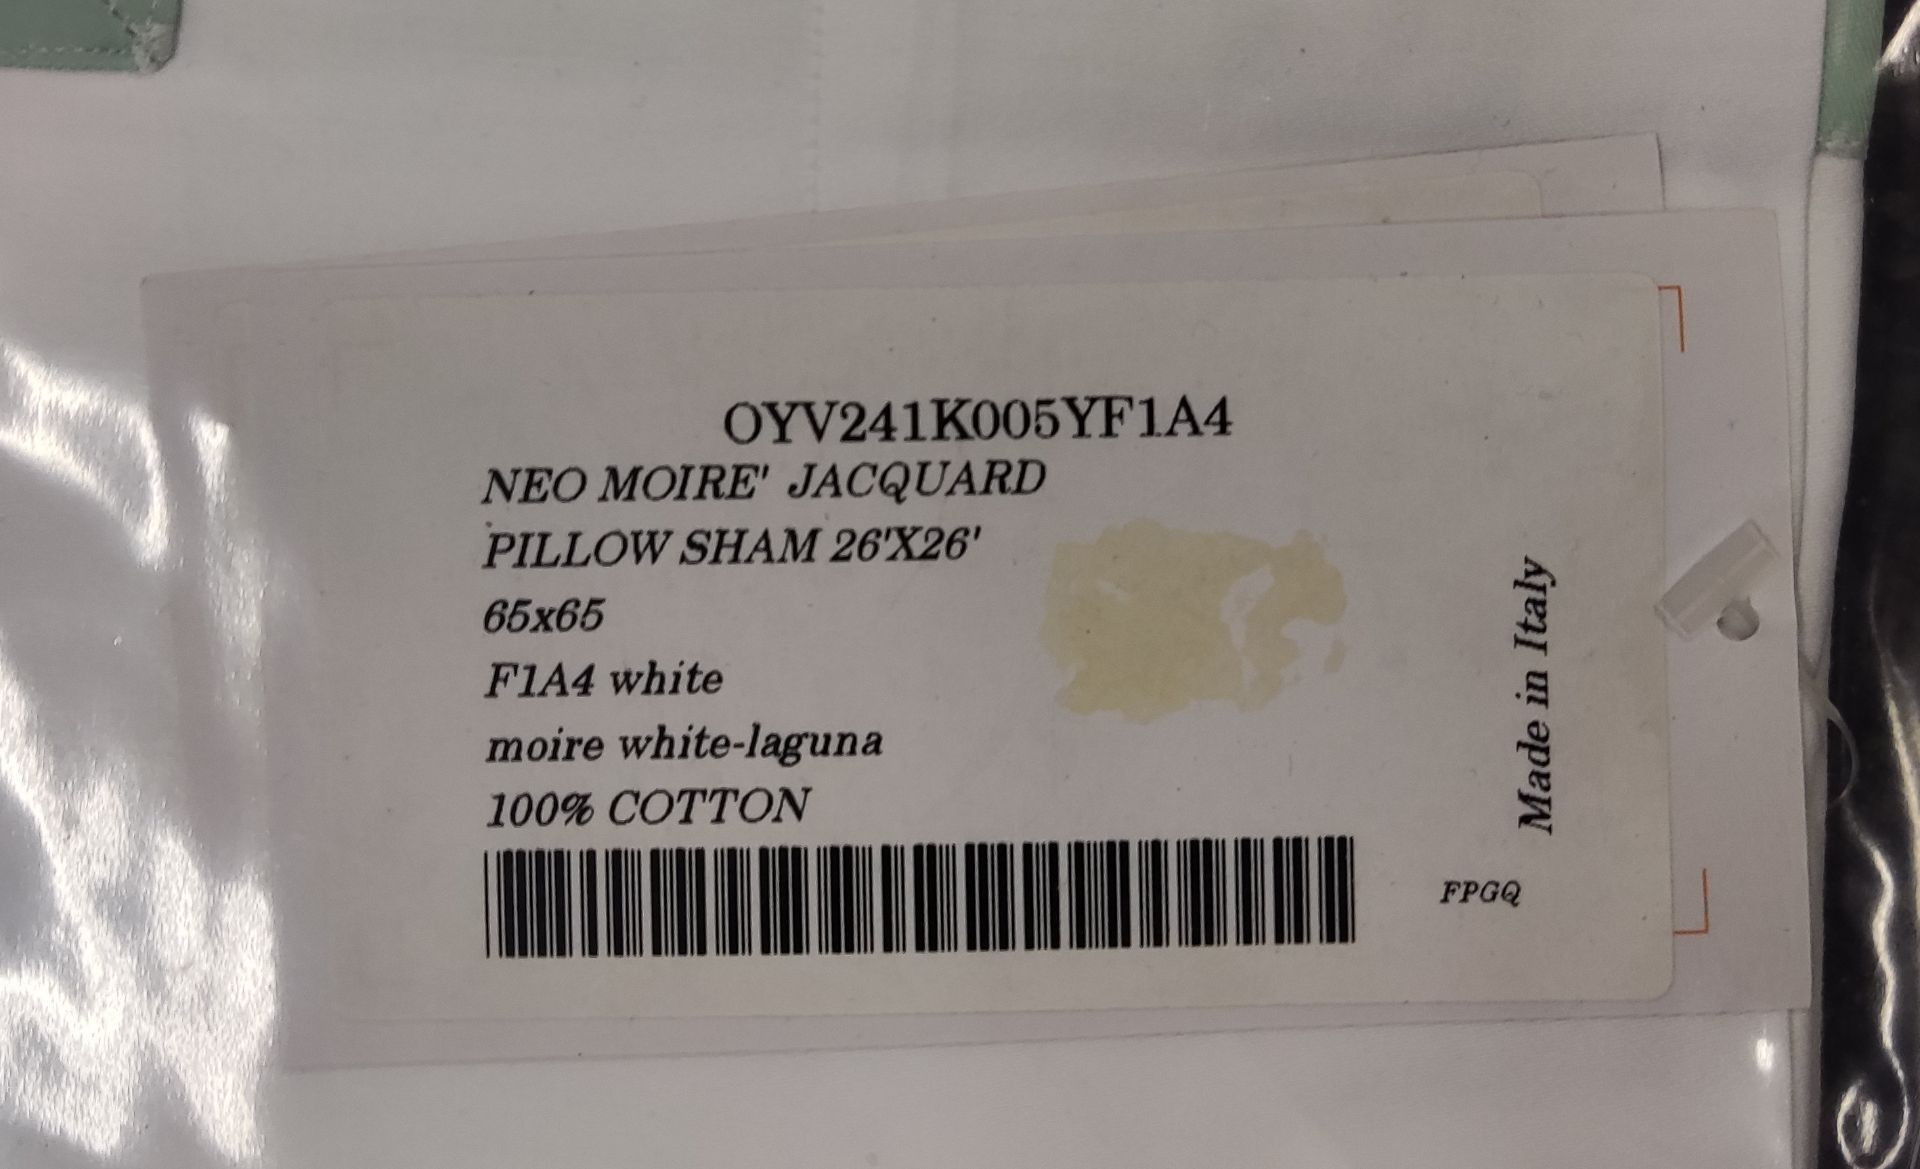 Pair of PRATESI 'Neo Moire' Jacquard' 100% Cotton Pillow Shams 65x65cm - Original Price £500.00 - - Image 4 of 4